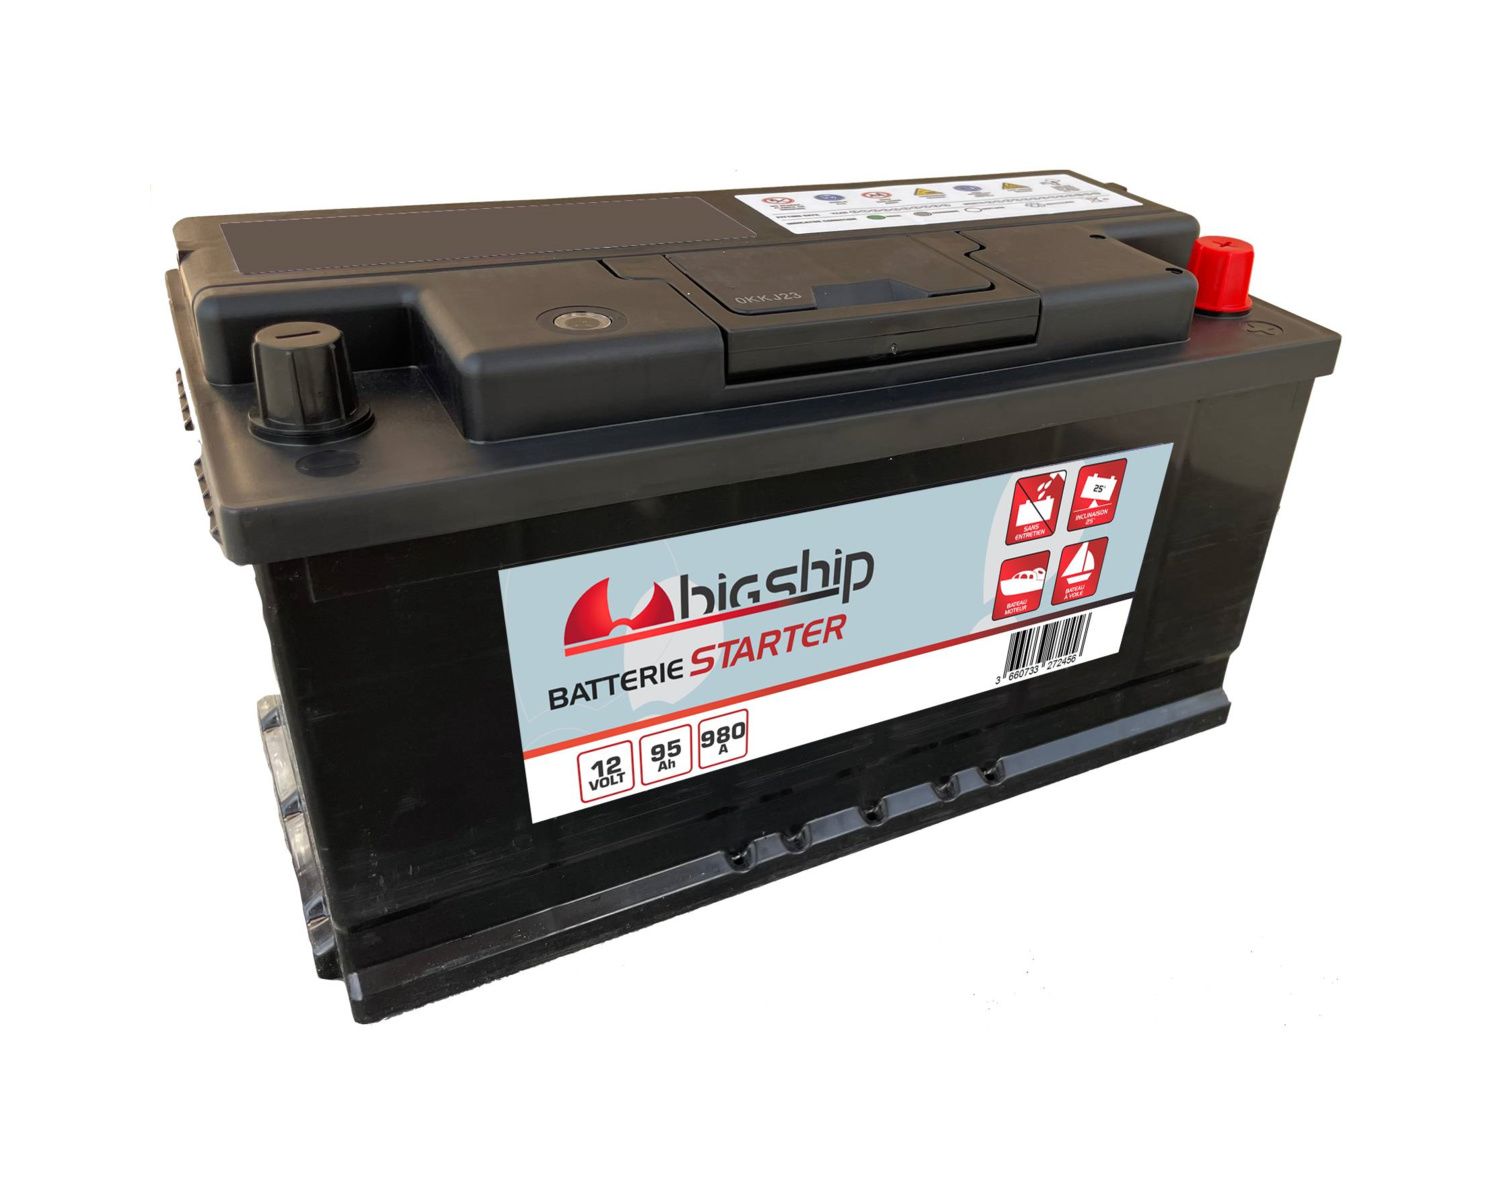 BIGSHIP Batterie starter 80Ah - Batteries - BigShip Accastillage